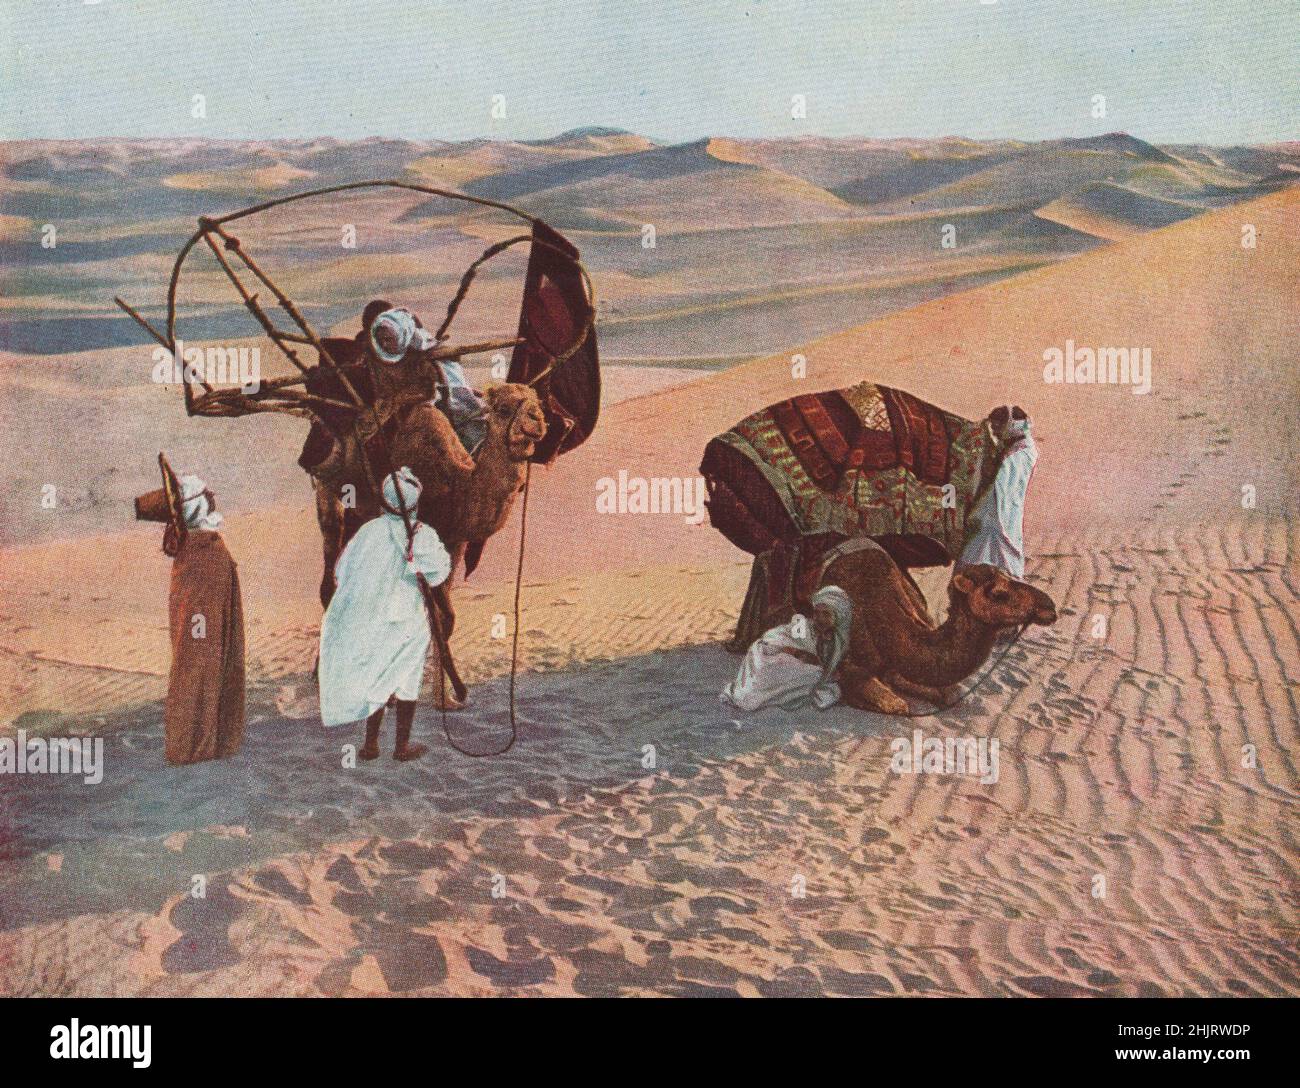 SAHARA. Während dieser Beduin seine Frauen-Leute durch den trostlosen Abfall begleitet, trägt er eine langarrelierte Waffe mit antikem Design. Nordafrika (1923) Stockfoto